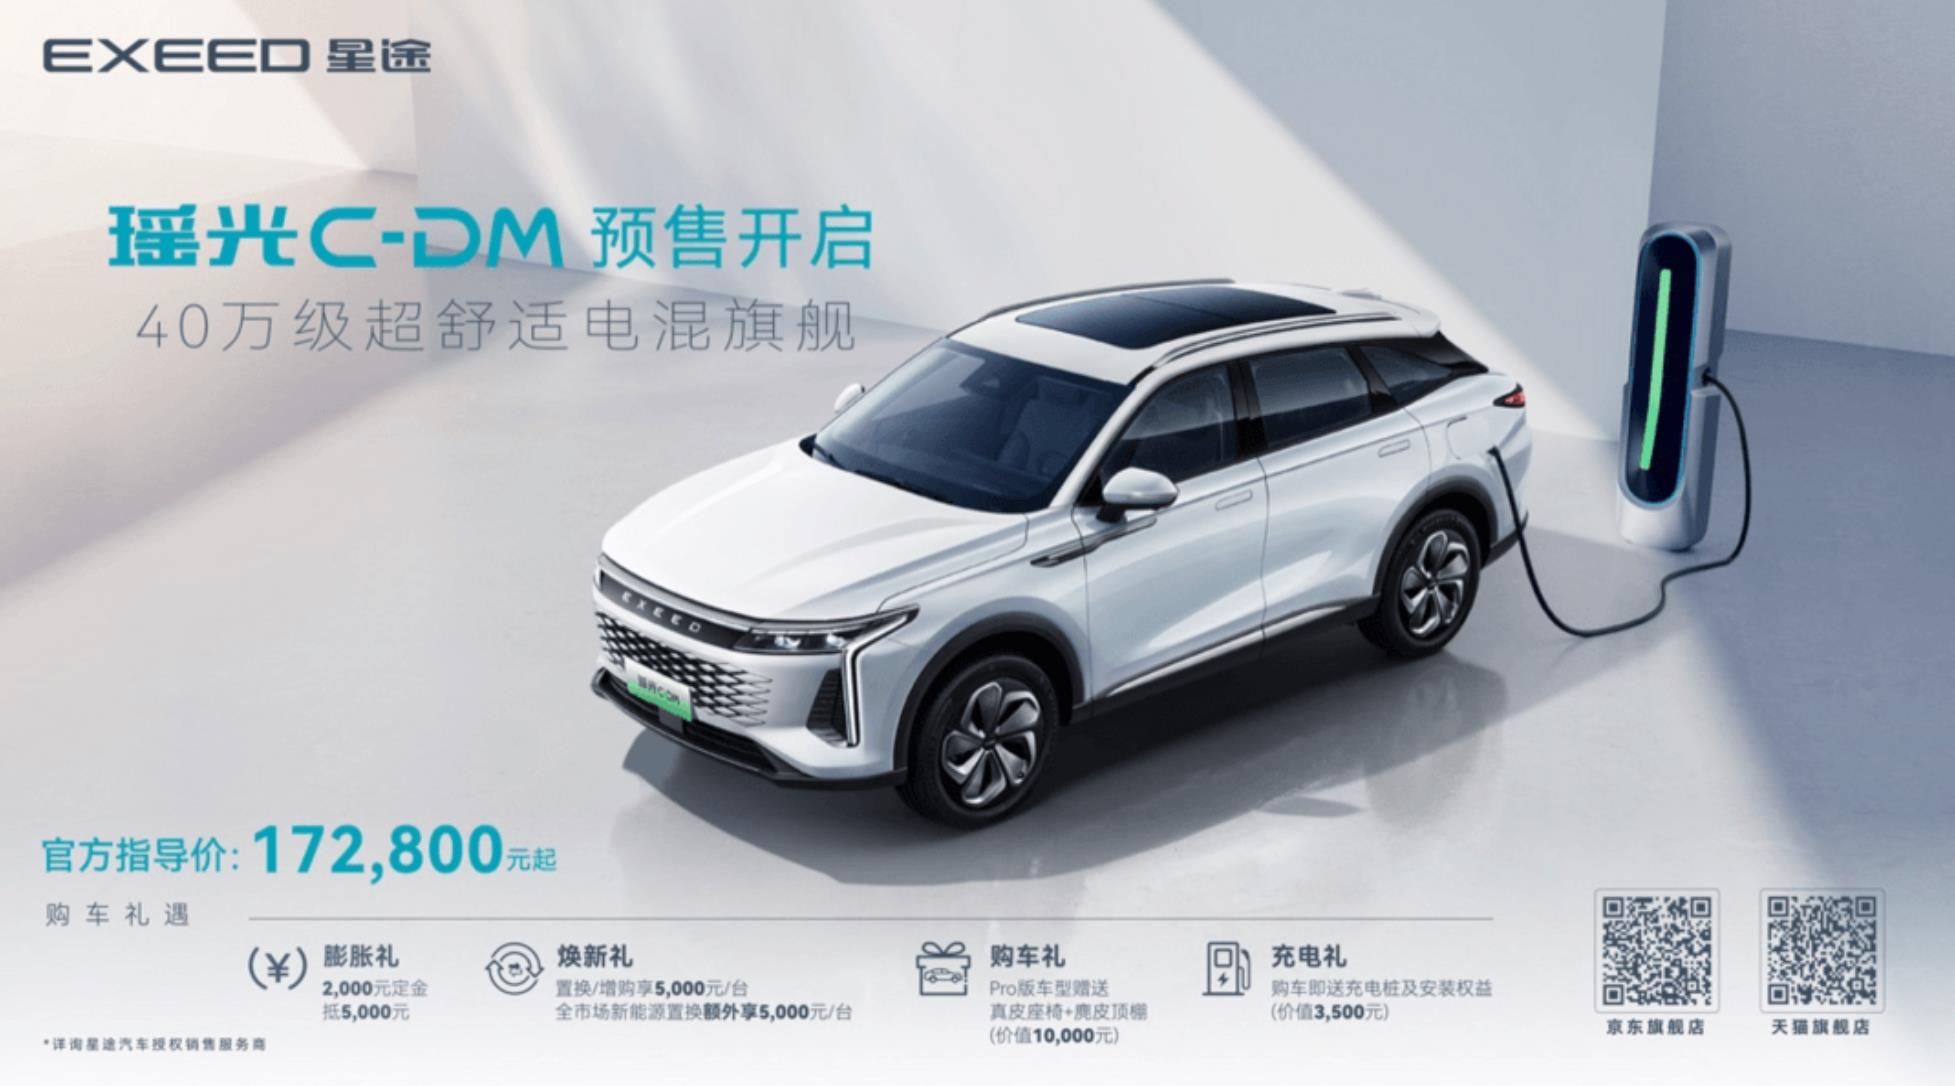 超舒适电混旗舰SUV星途瑶光C-DM开启预售，预售价17.28万元起